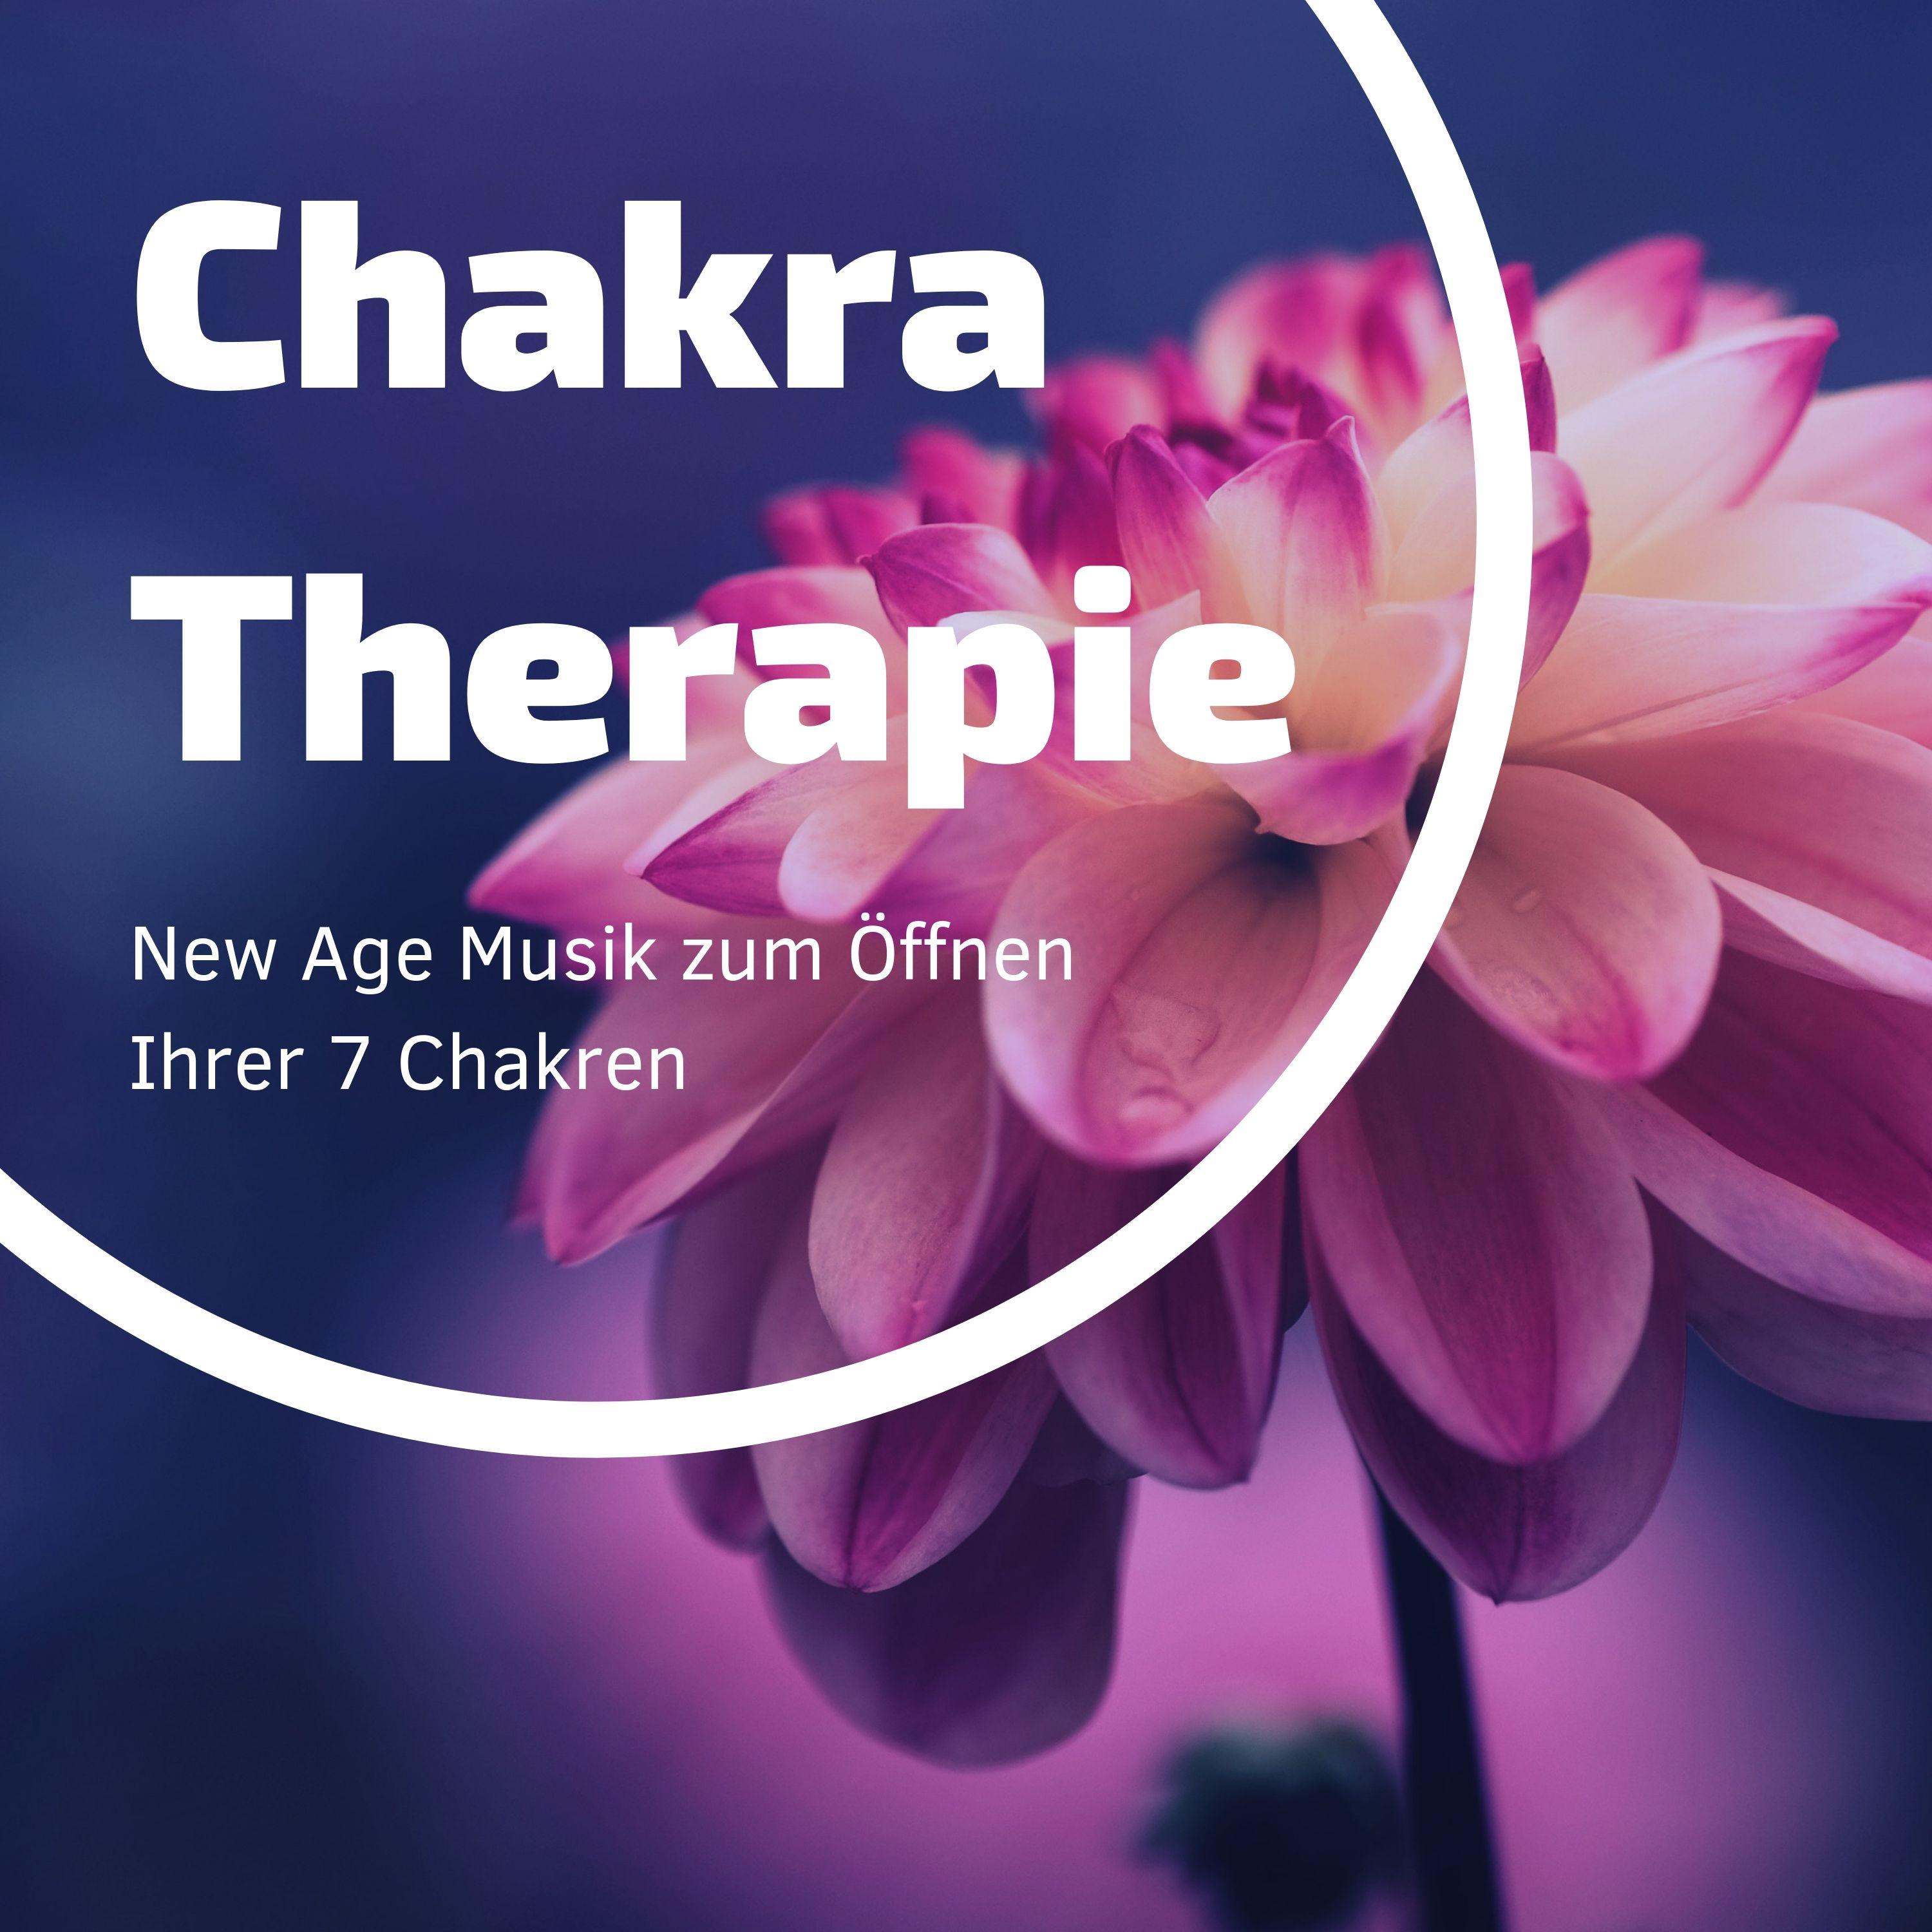 Chakra Therapie: New Age Musik zum ffnen Ihrer 7 Chakren